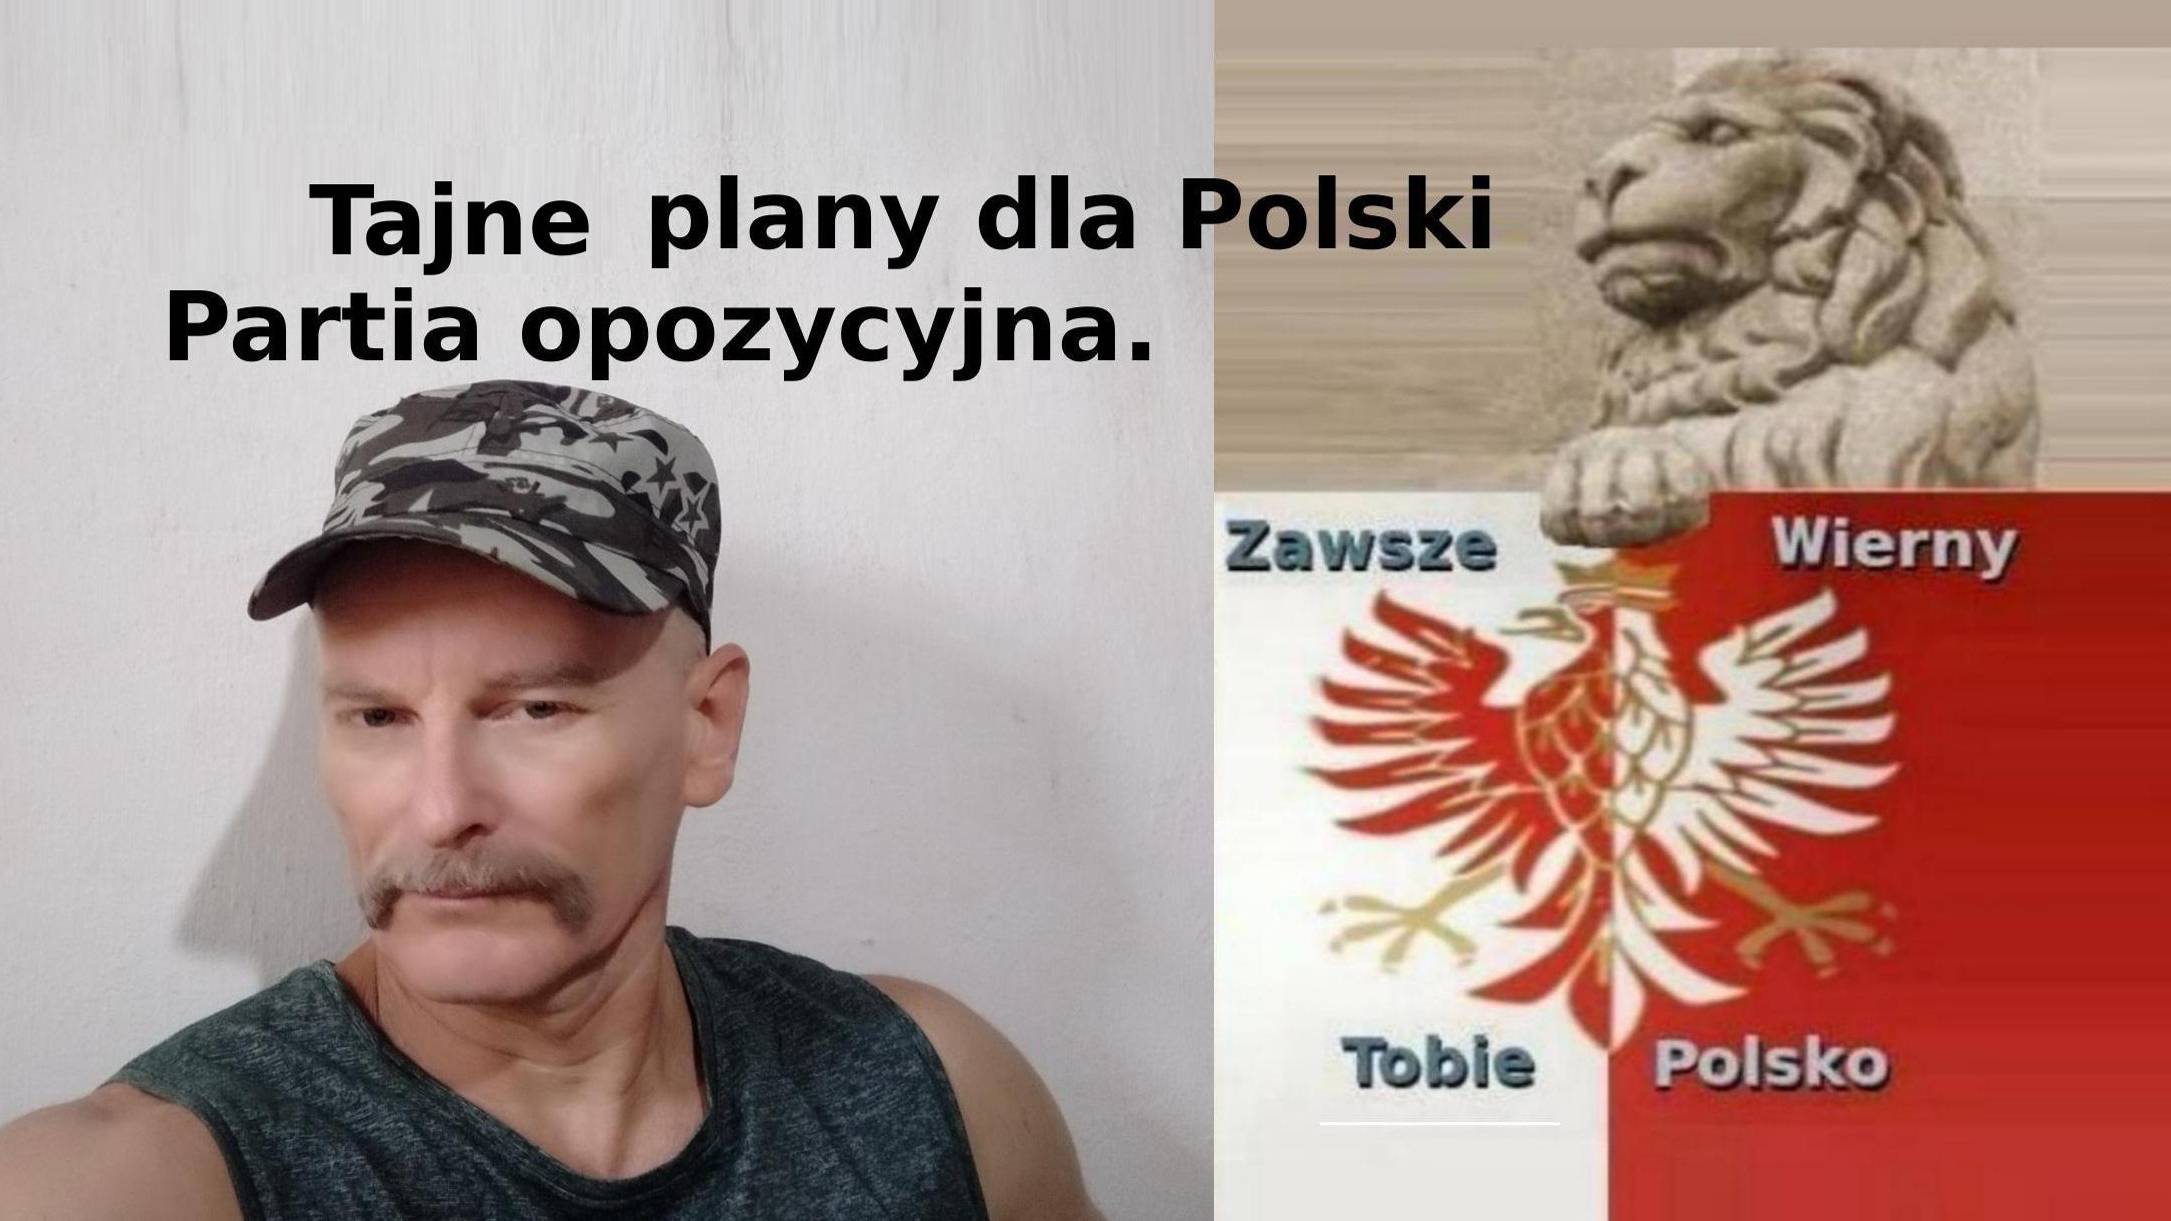 Tajne plany dla Polski.